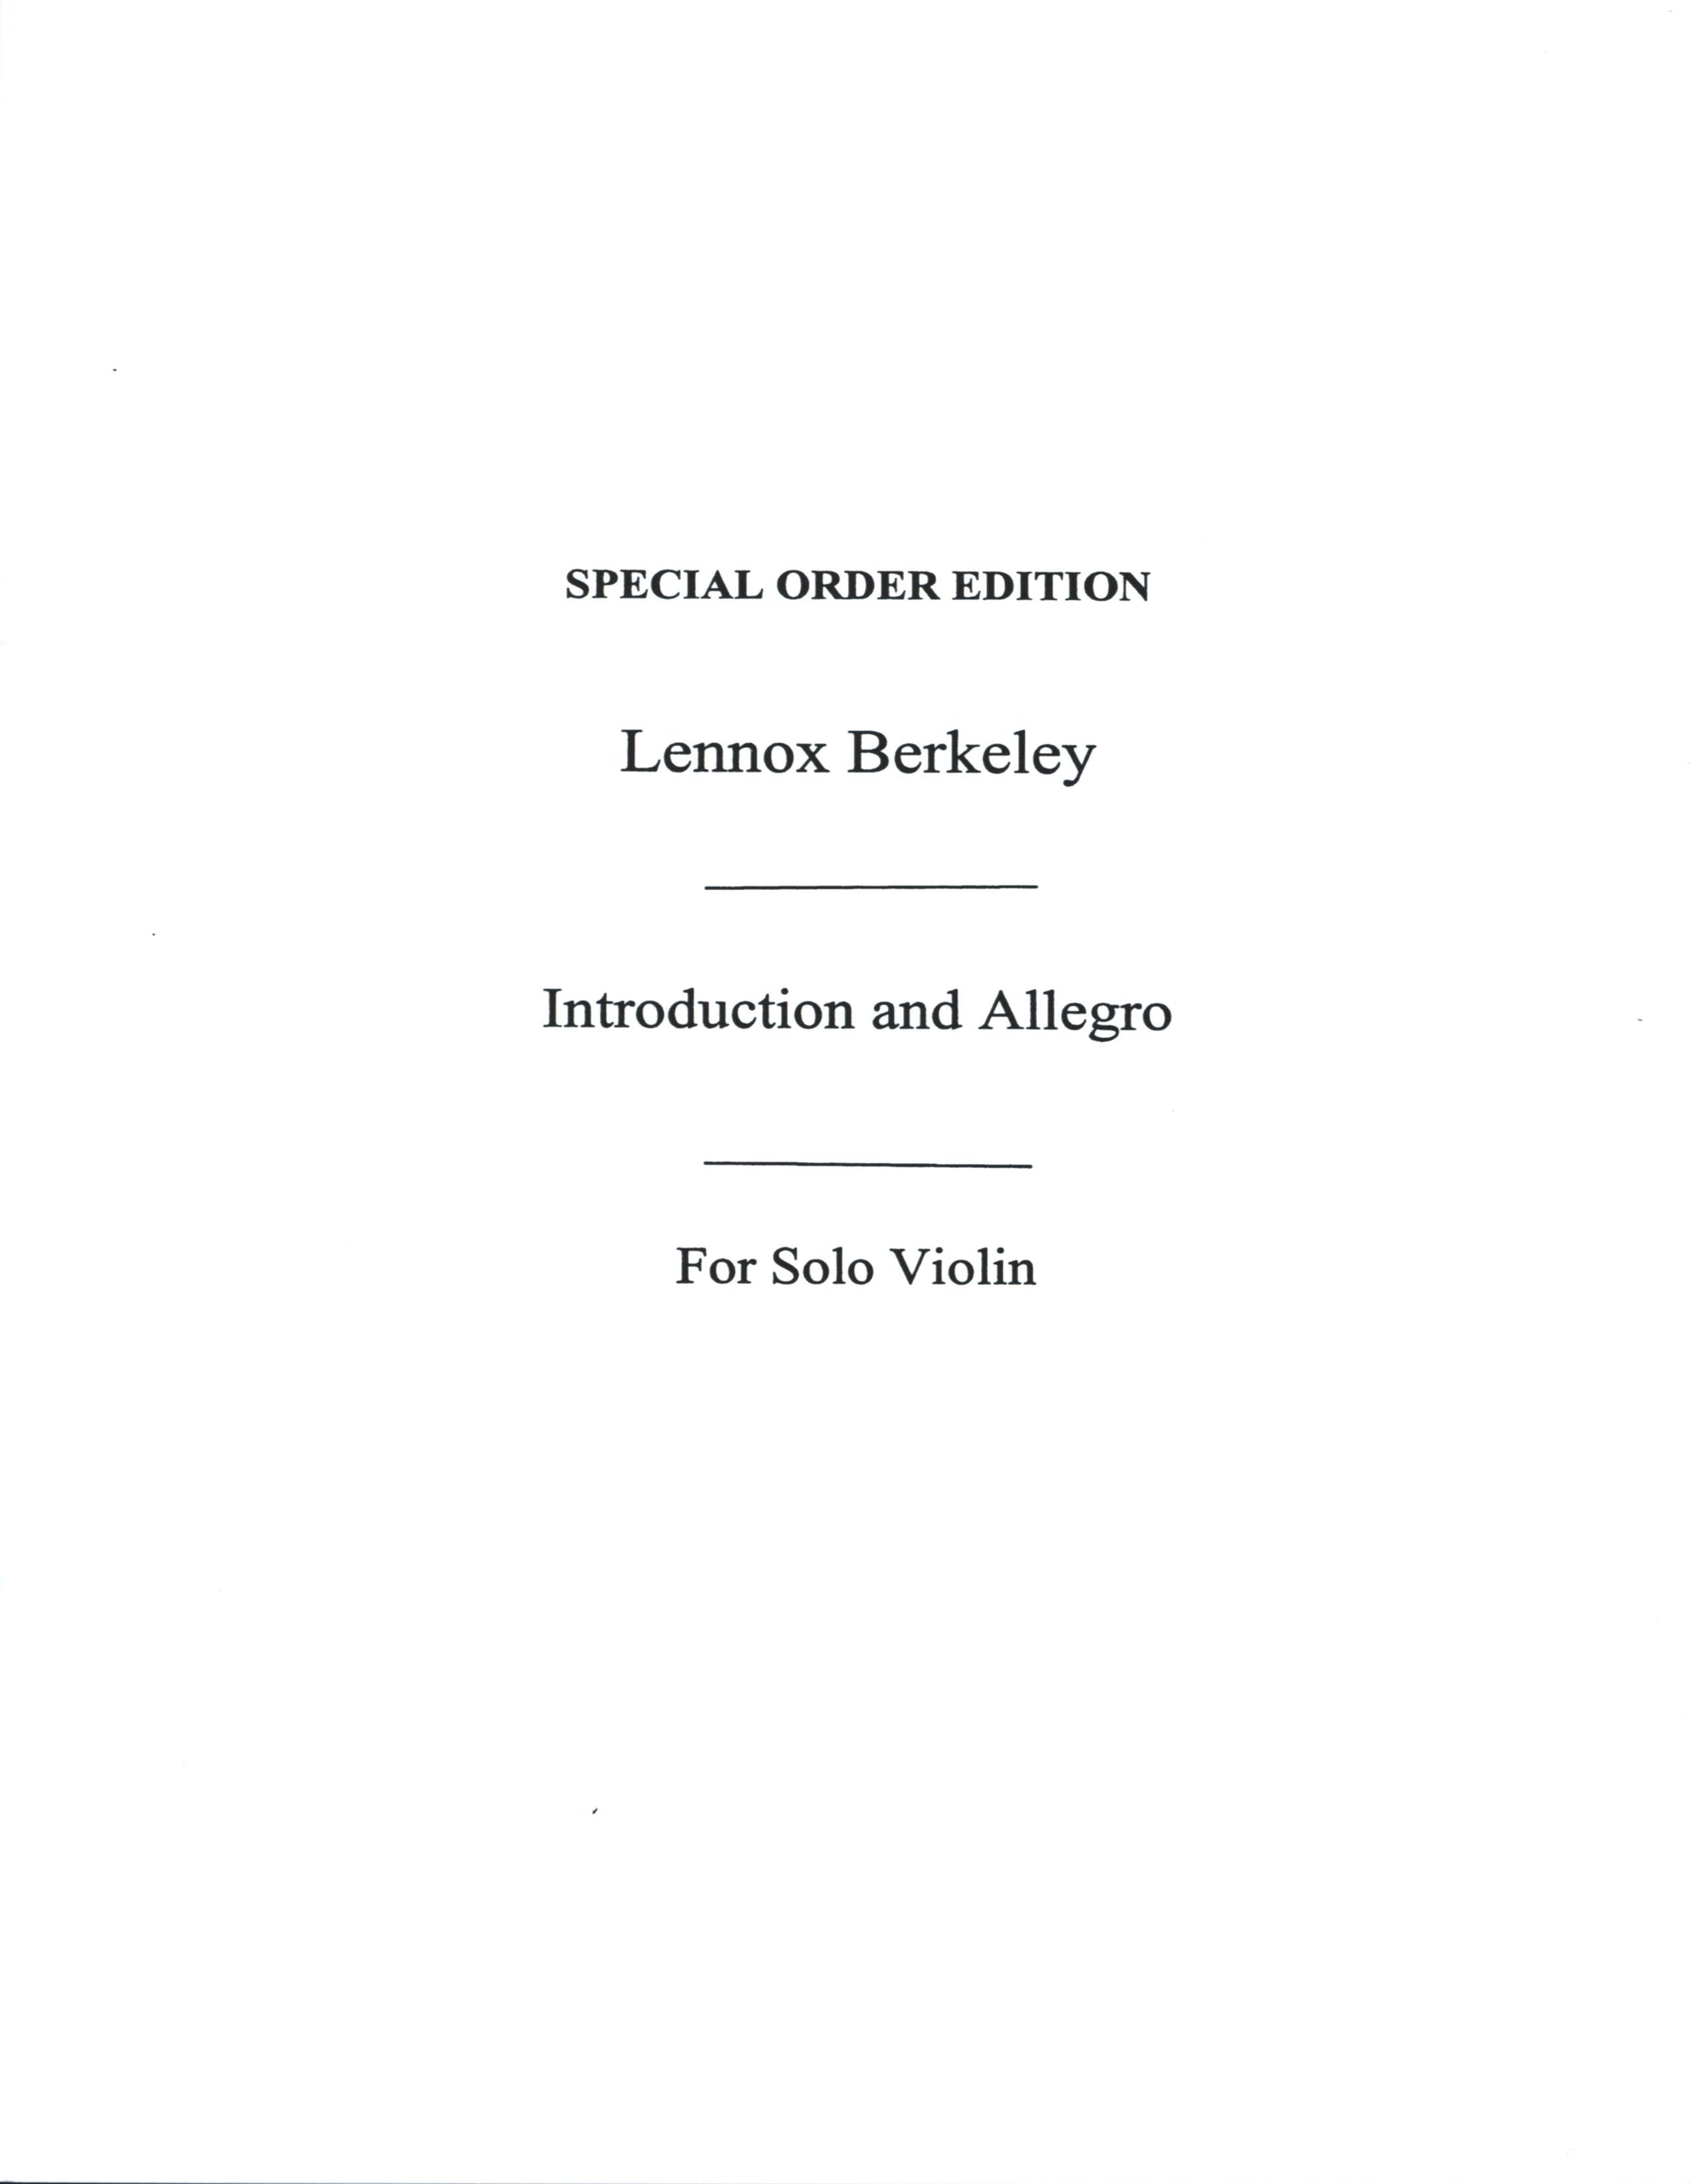 Berkeley: Introduction and Allegro, Op. 24